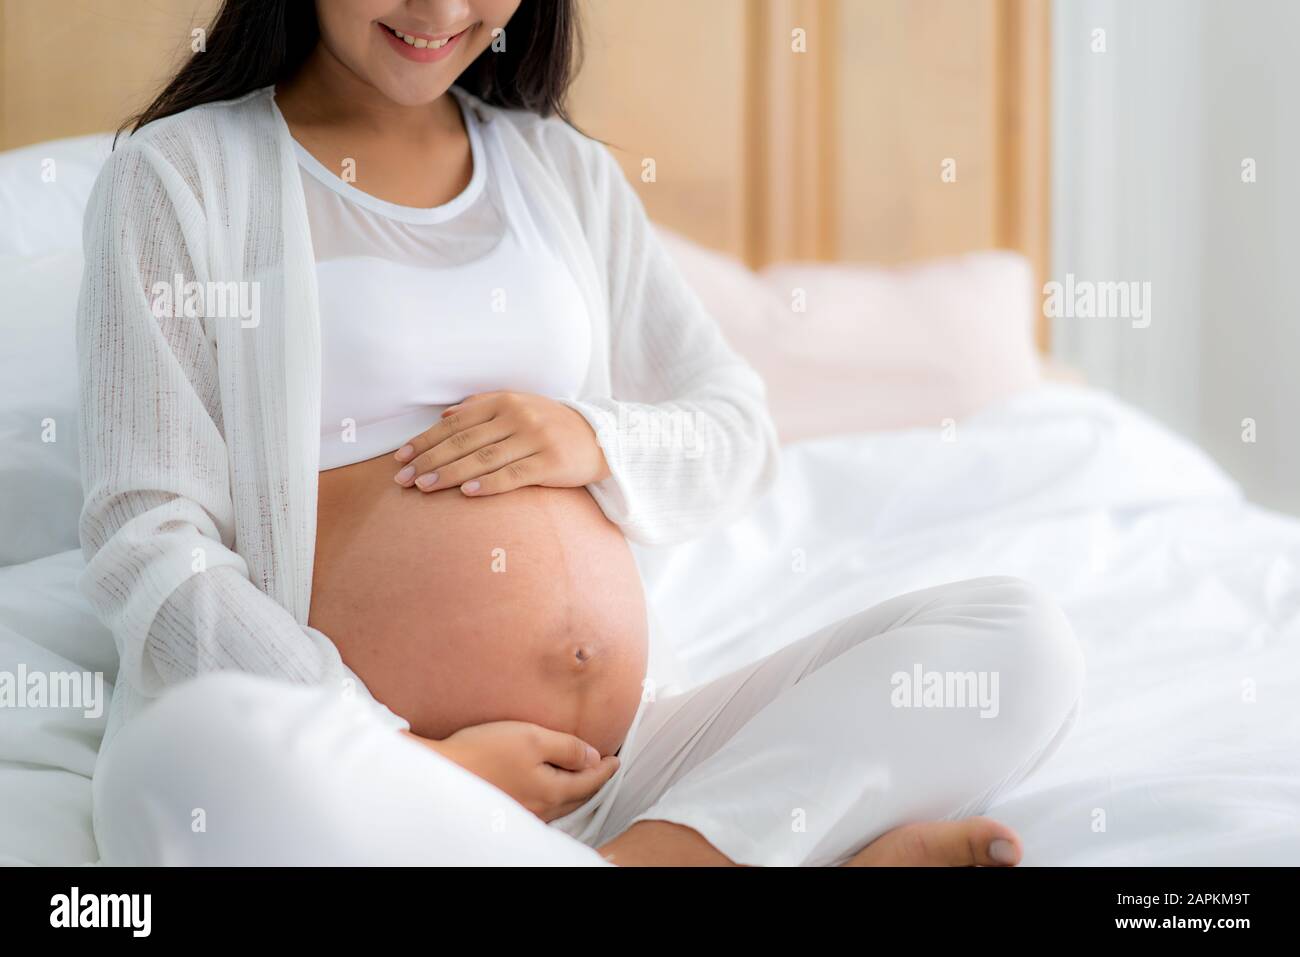 Gros plan sur une femme asiatique enceinte souriante et heureuse assise sur le lit et touchant son ventre à la maison. Concept de grossesse, de repos, de personnes et d'attentes Banque D'Images